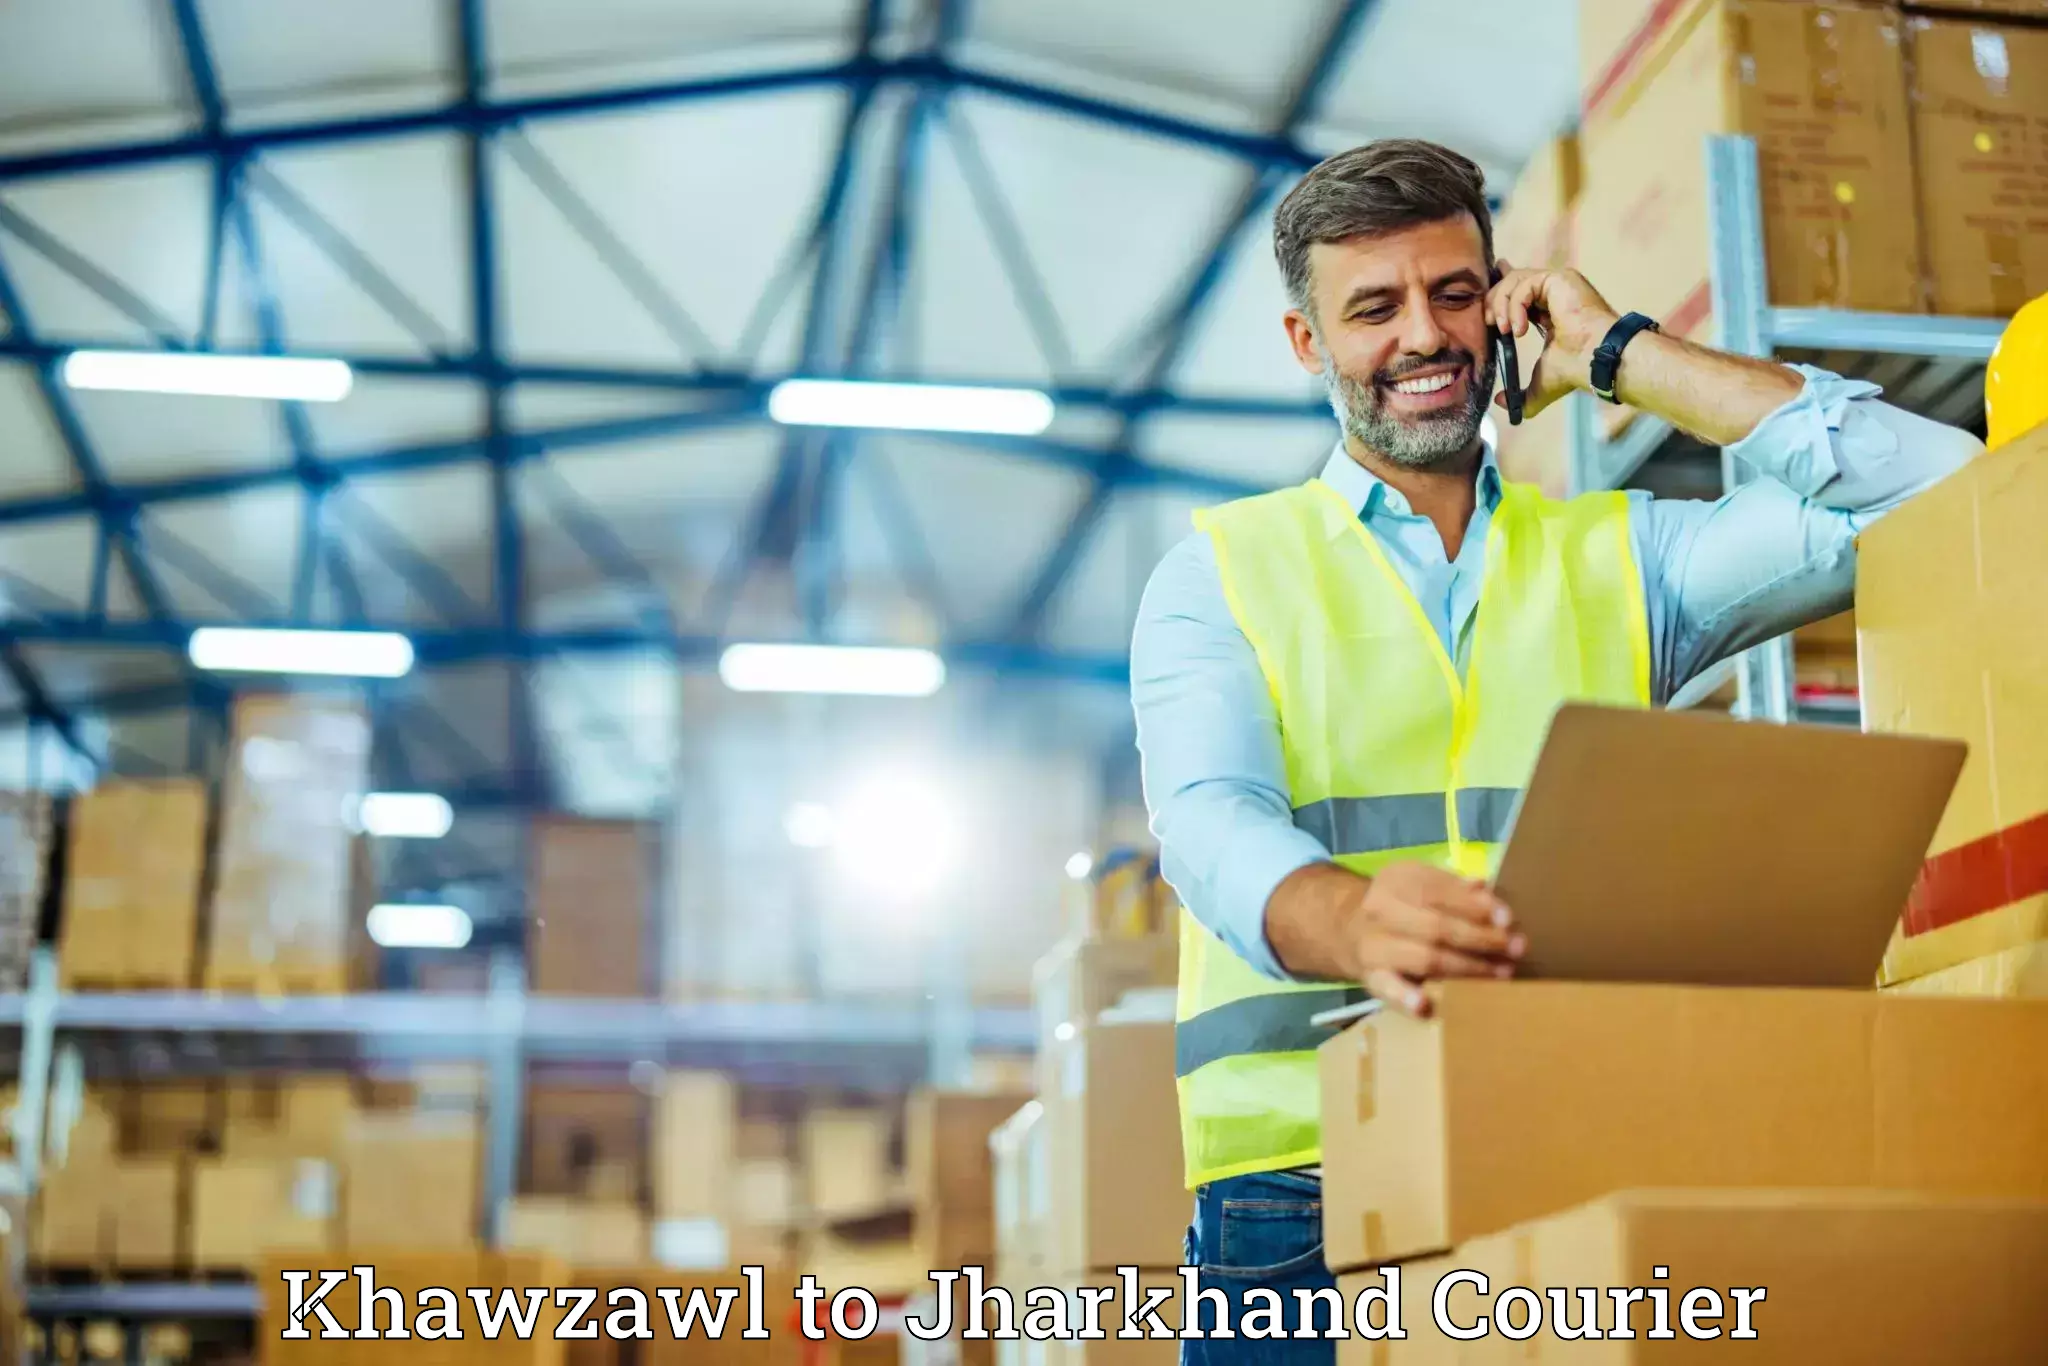 Household goods movers and packers Khawzawl to Chandankiyari